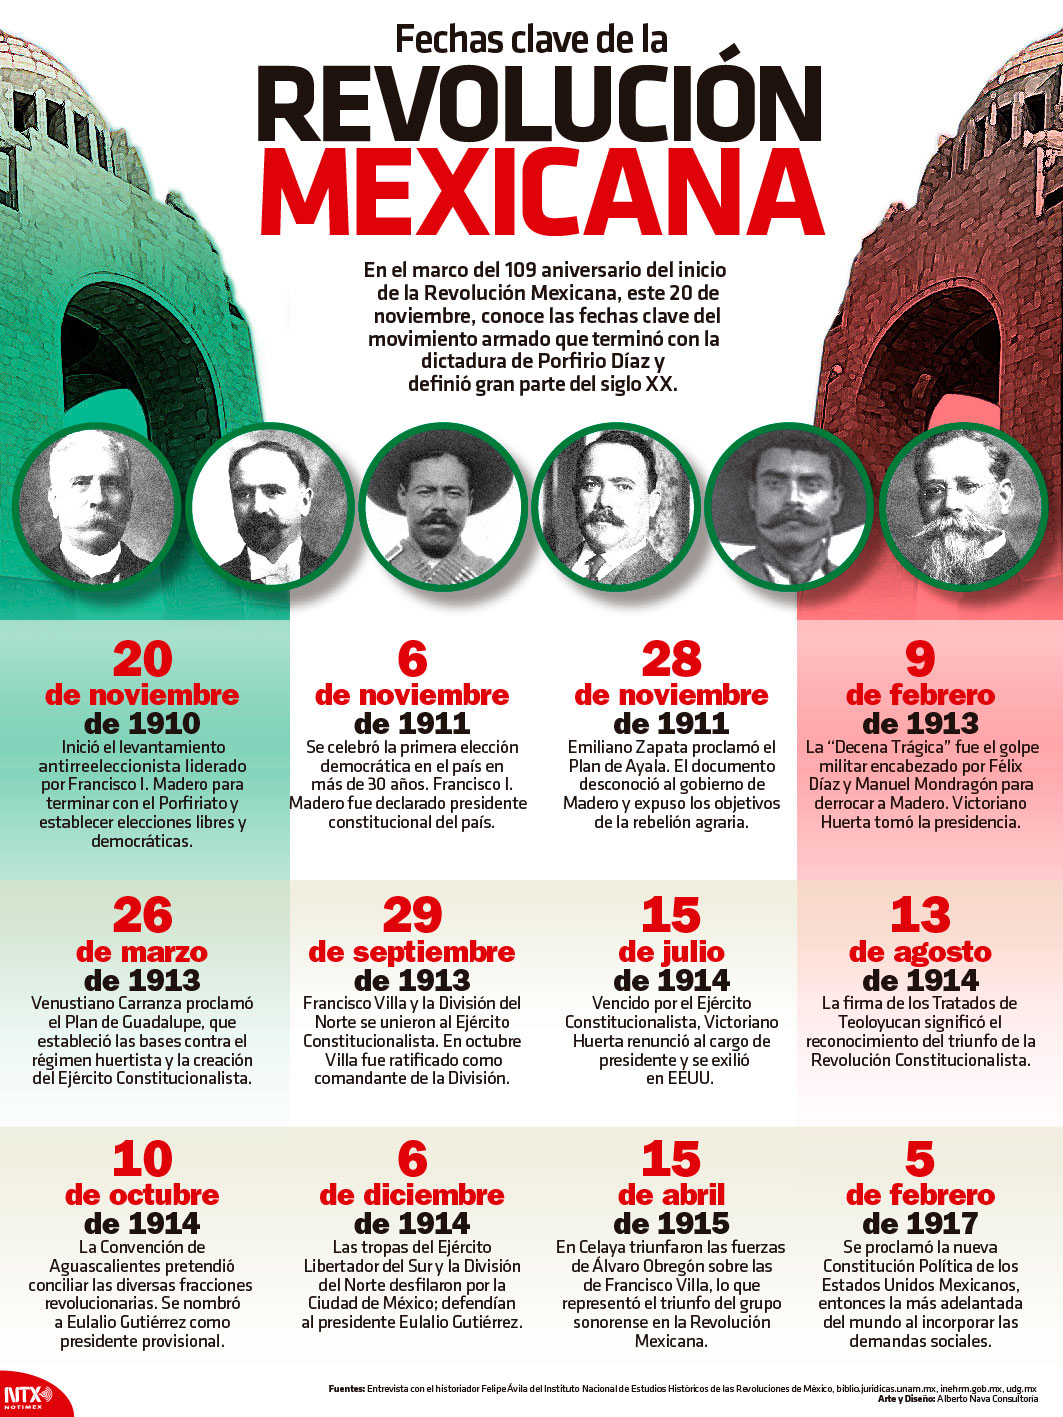 Fechas clave de la Revolución Mexicana